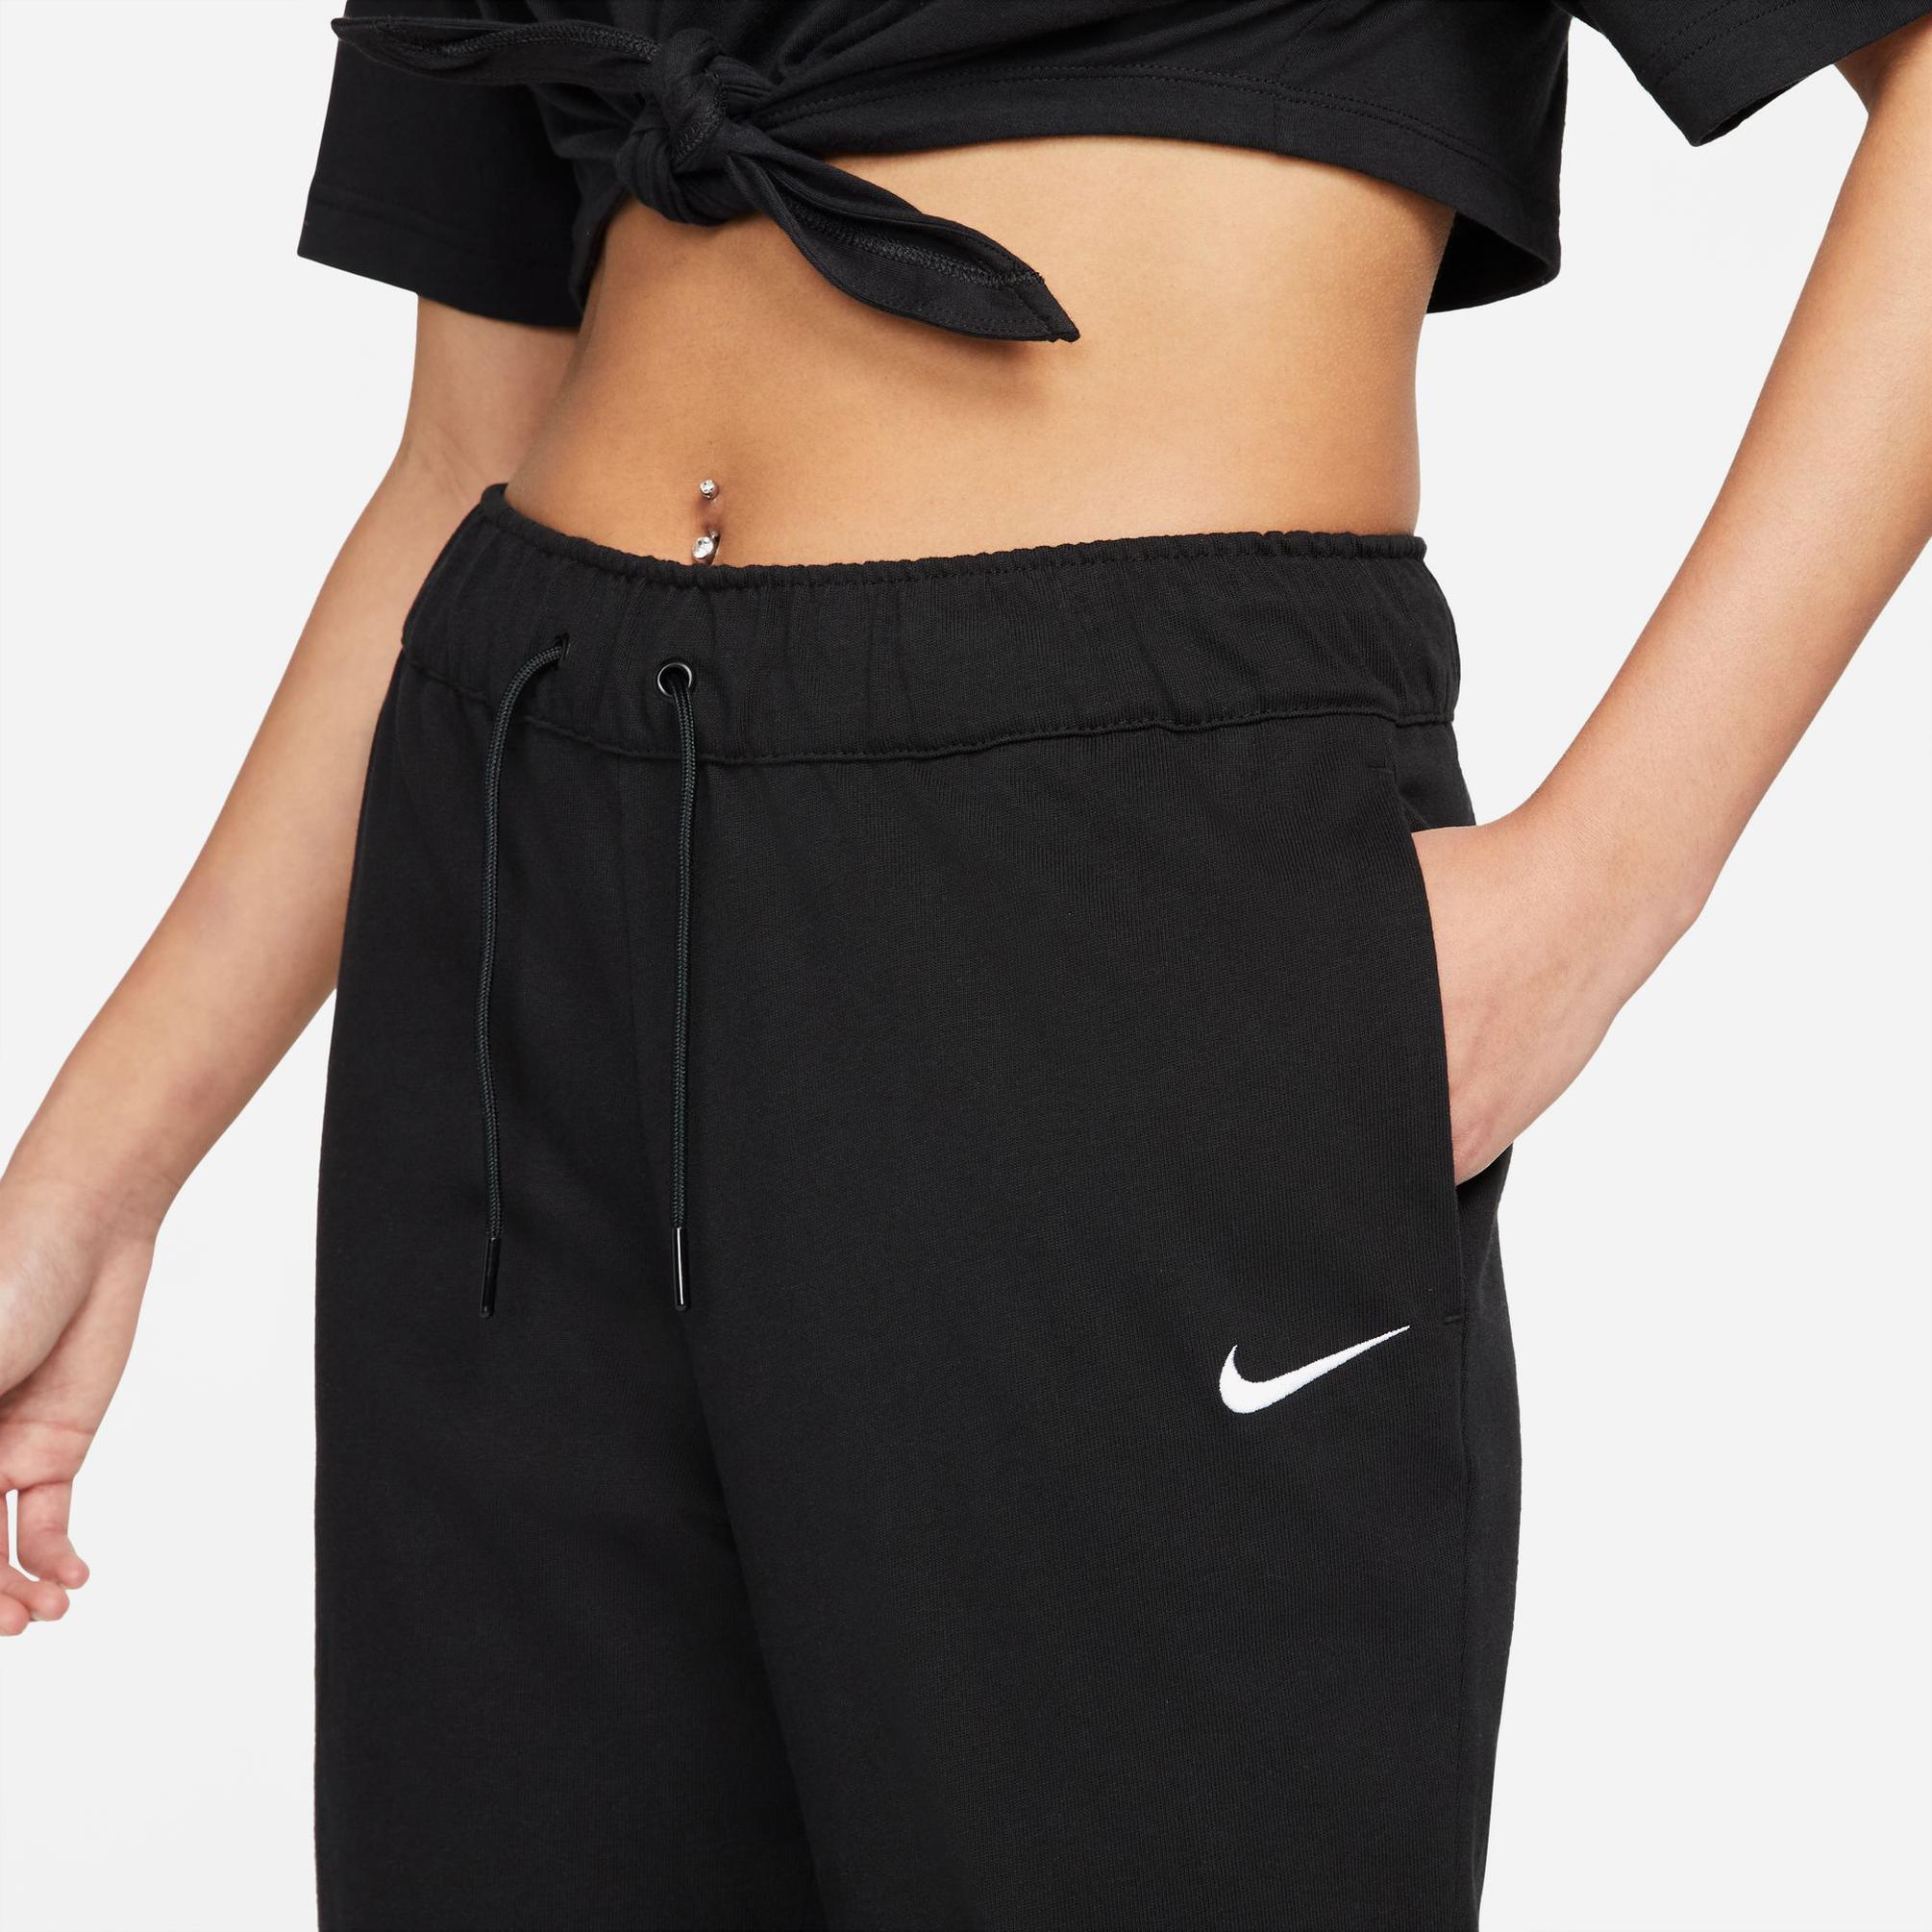  Nike Sportswear Kadın Siyah Eşofman Altı